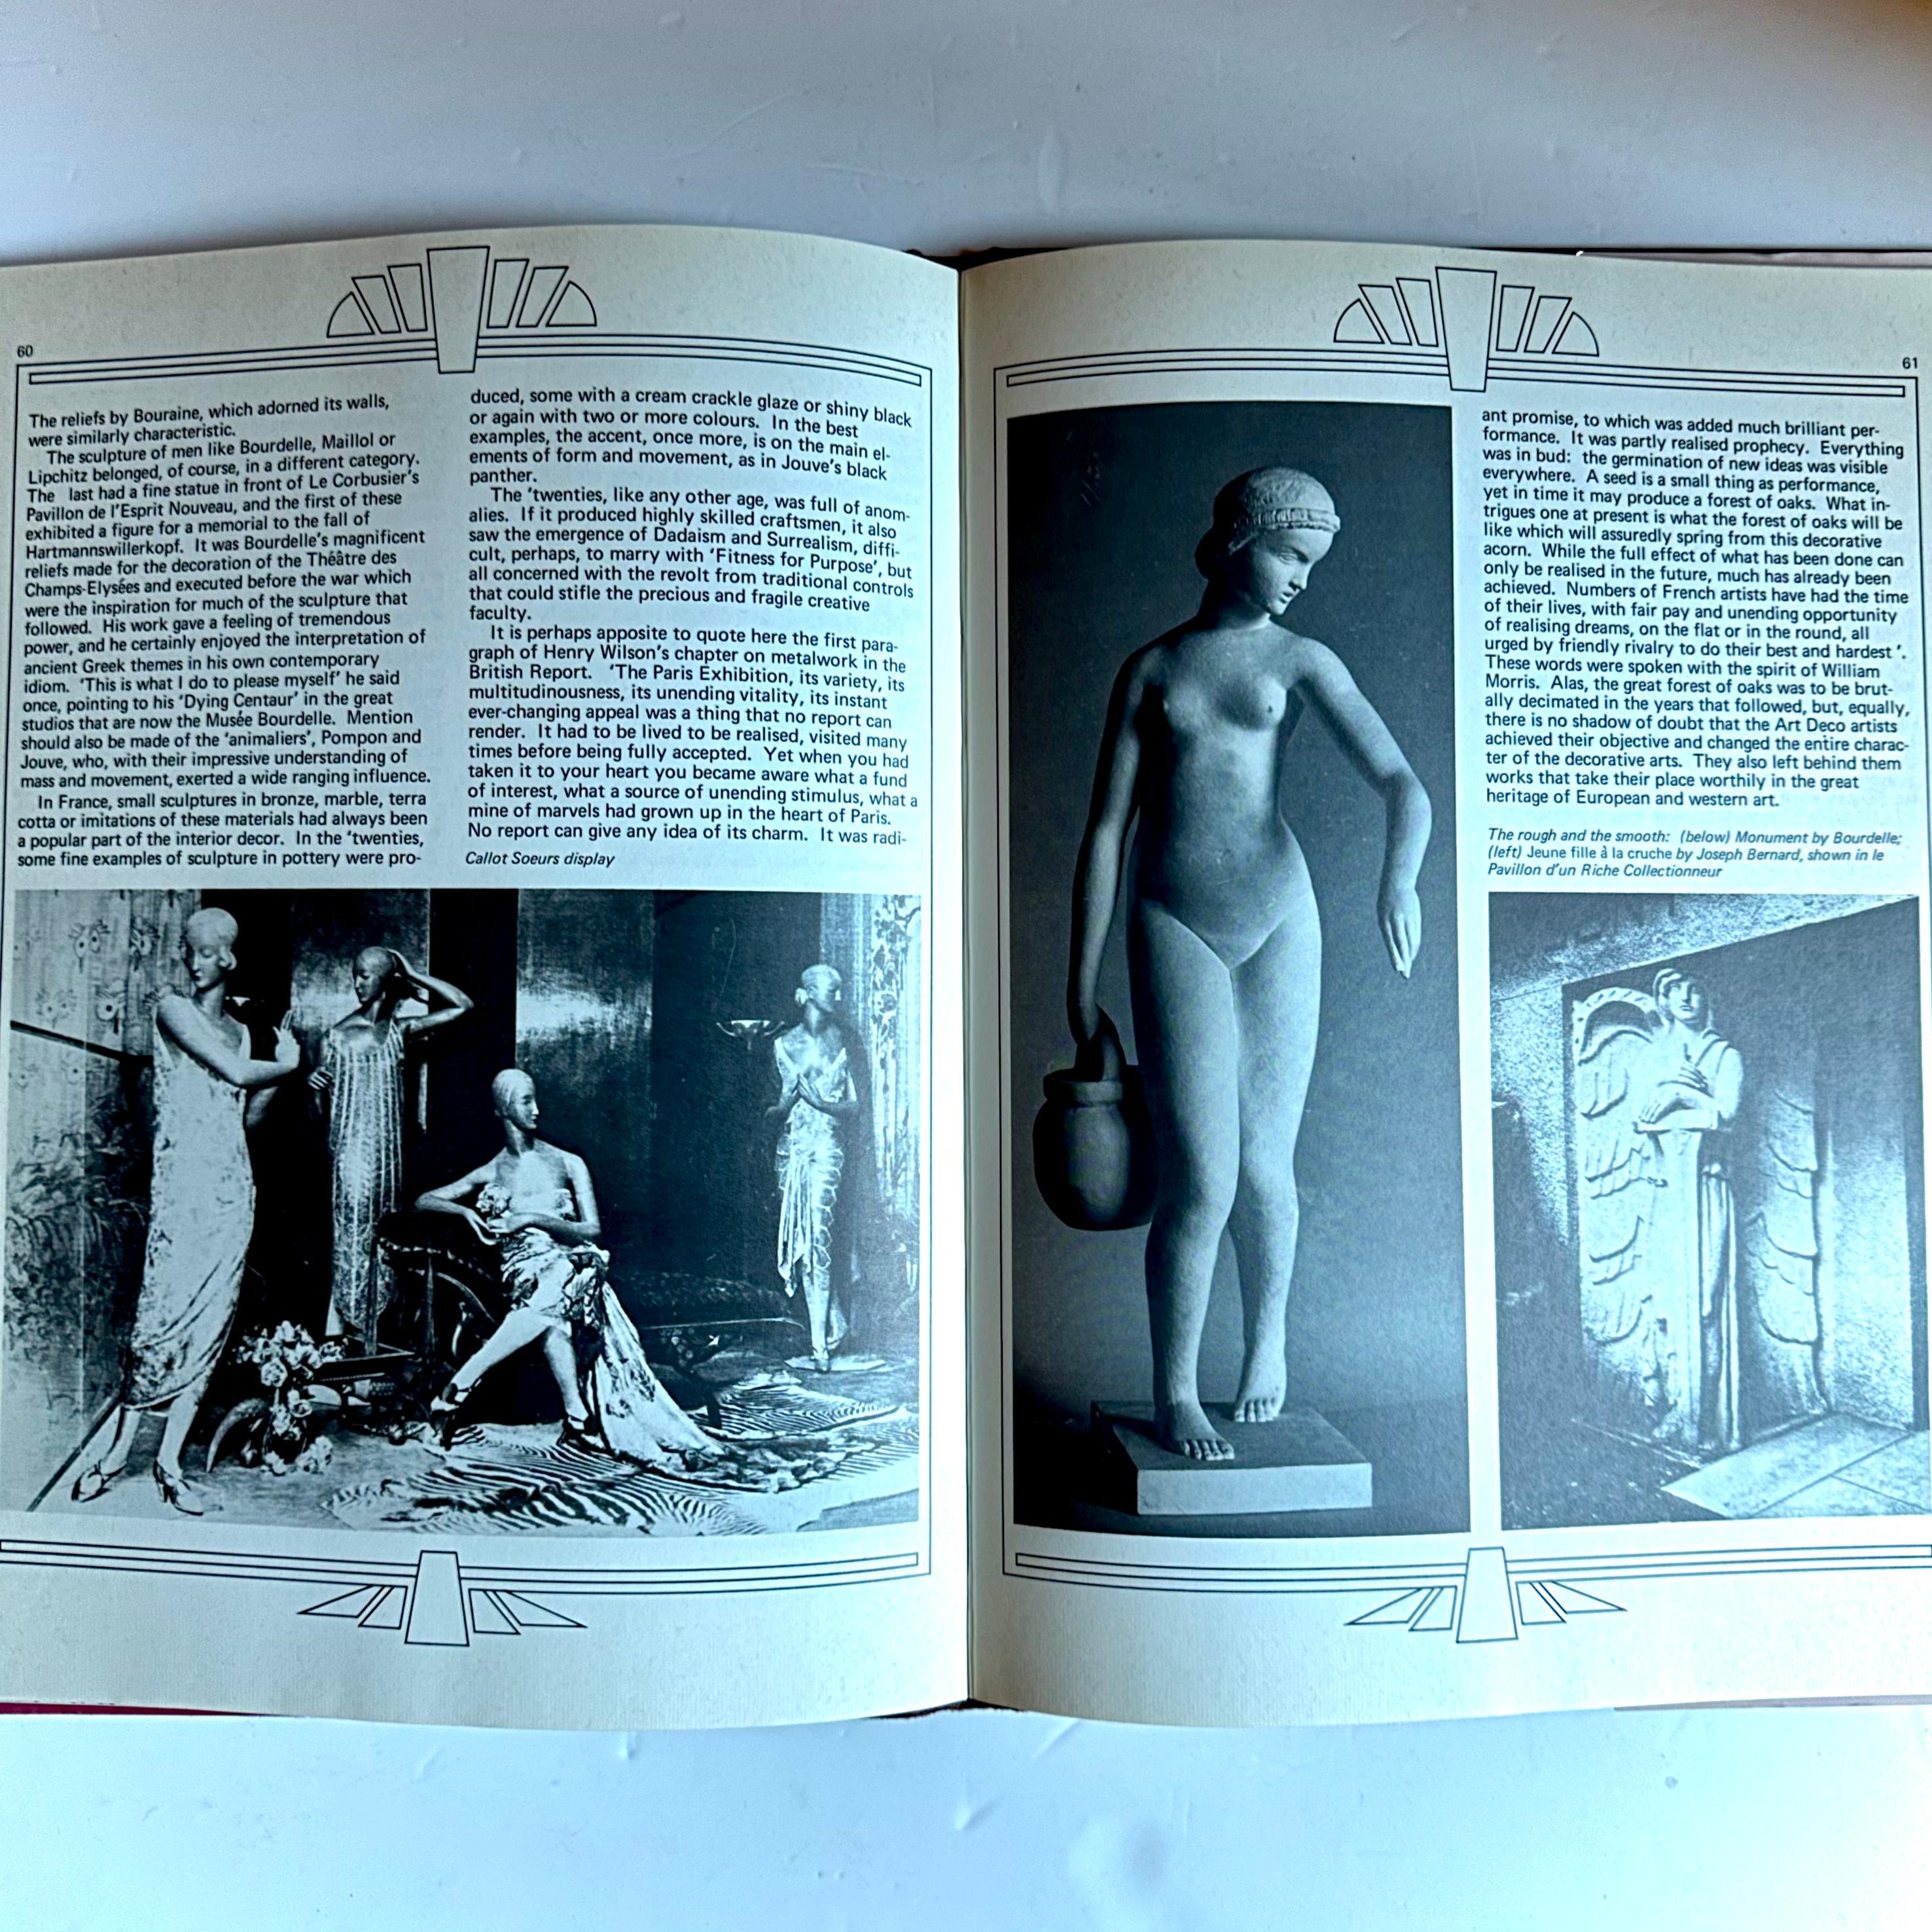 Arts Decoratifs 1925: Eine persönliche Erinnerung an die Pariser Ausstellung - 1975 (Ende des 20. Jahrhunderts)